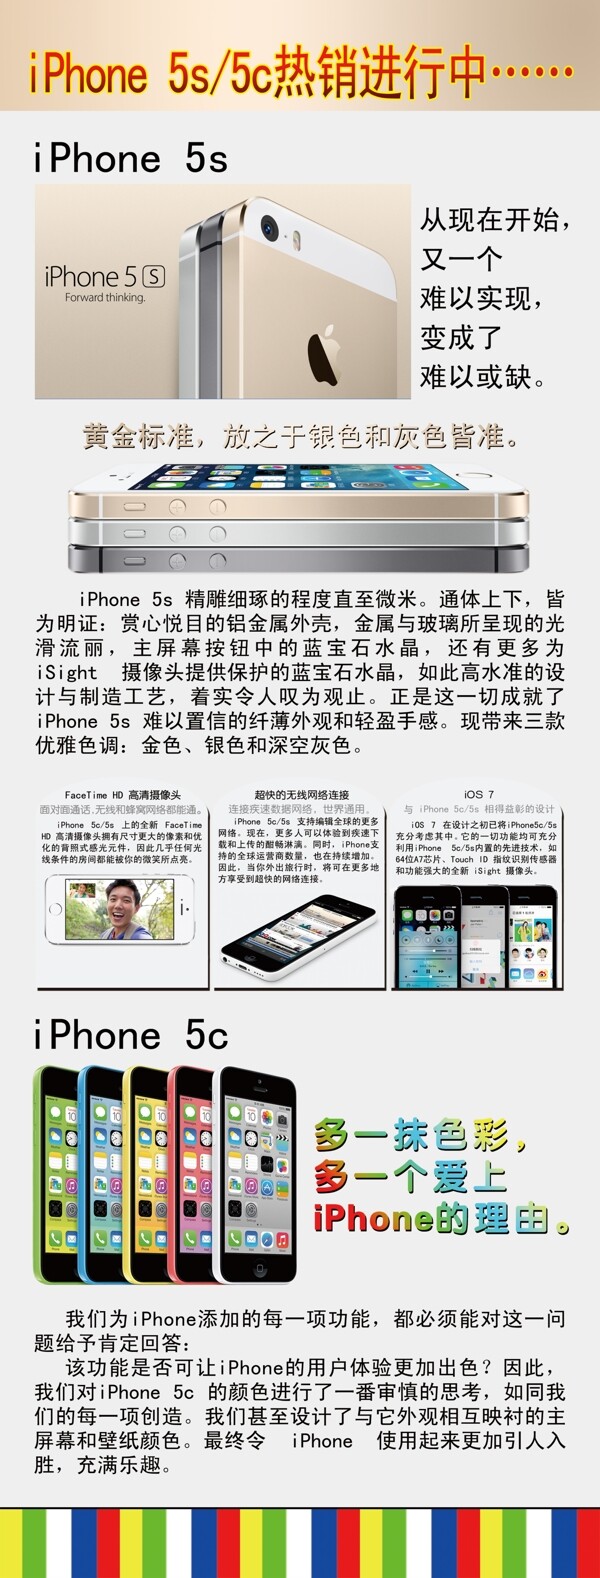 苹果5s5c海报图片